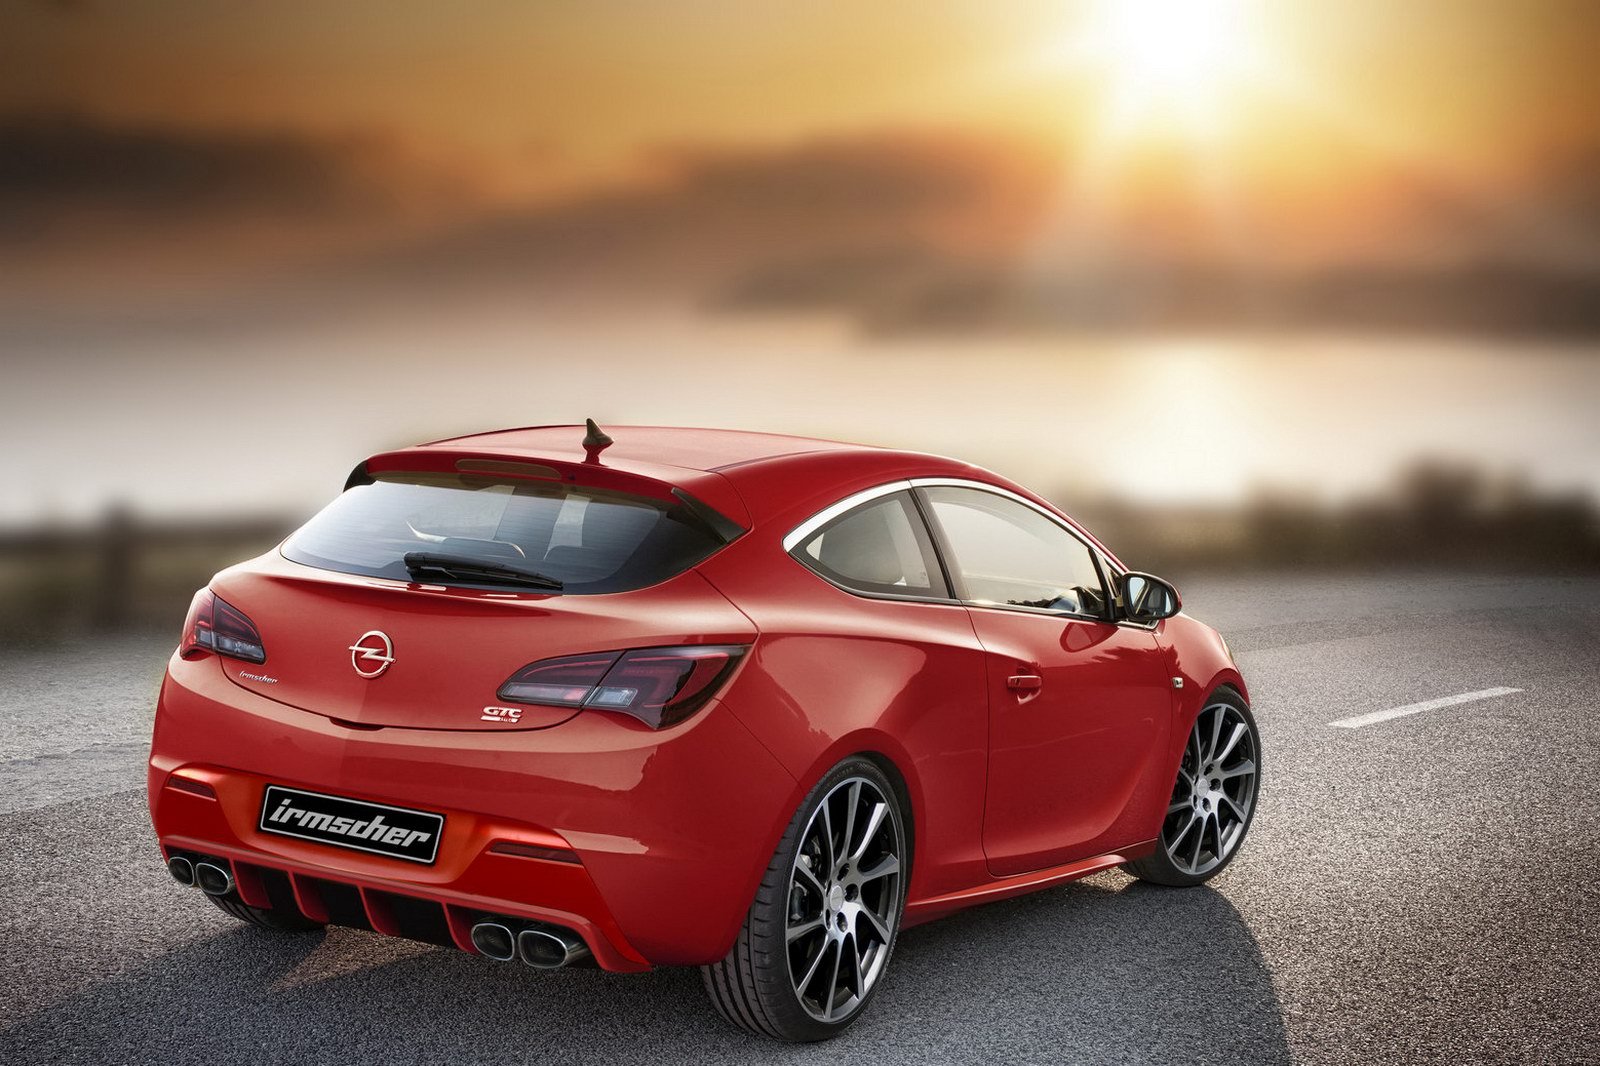 Irmscher propune un pachet nu prea discret de modificari pentru Opel Astra GTC